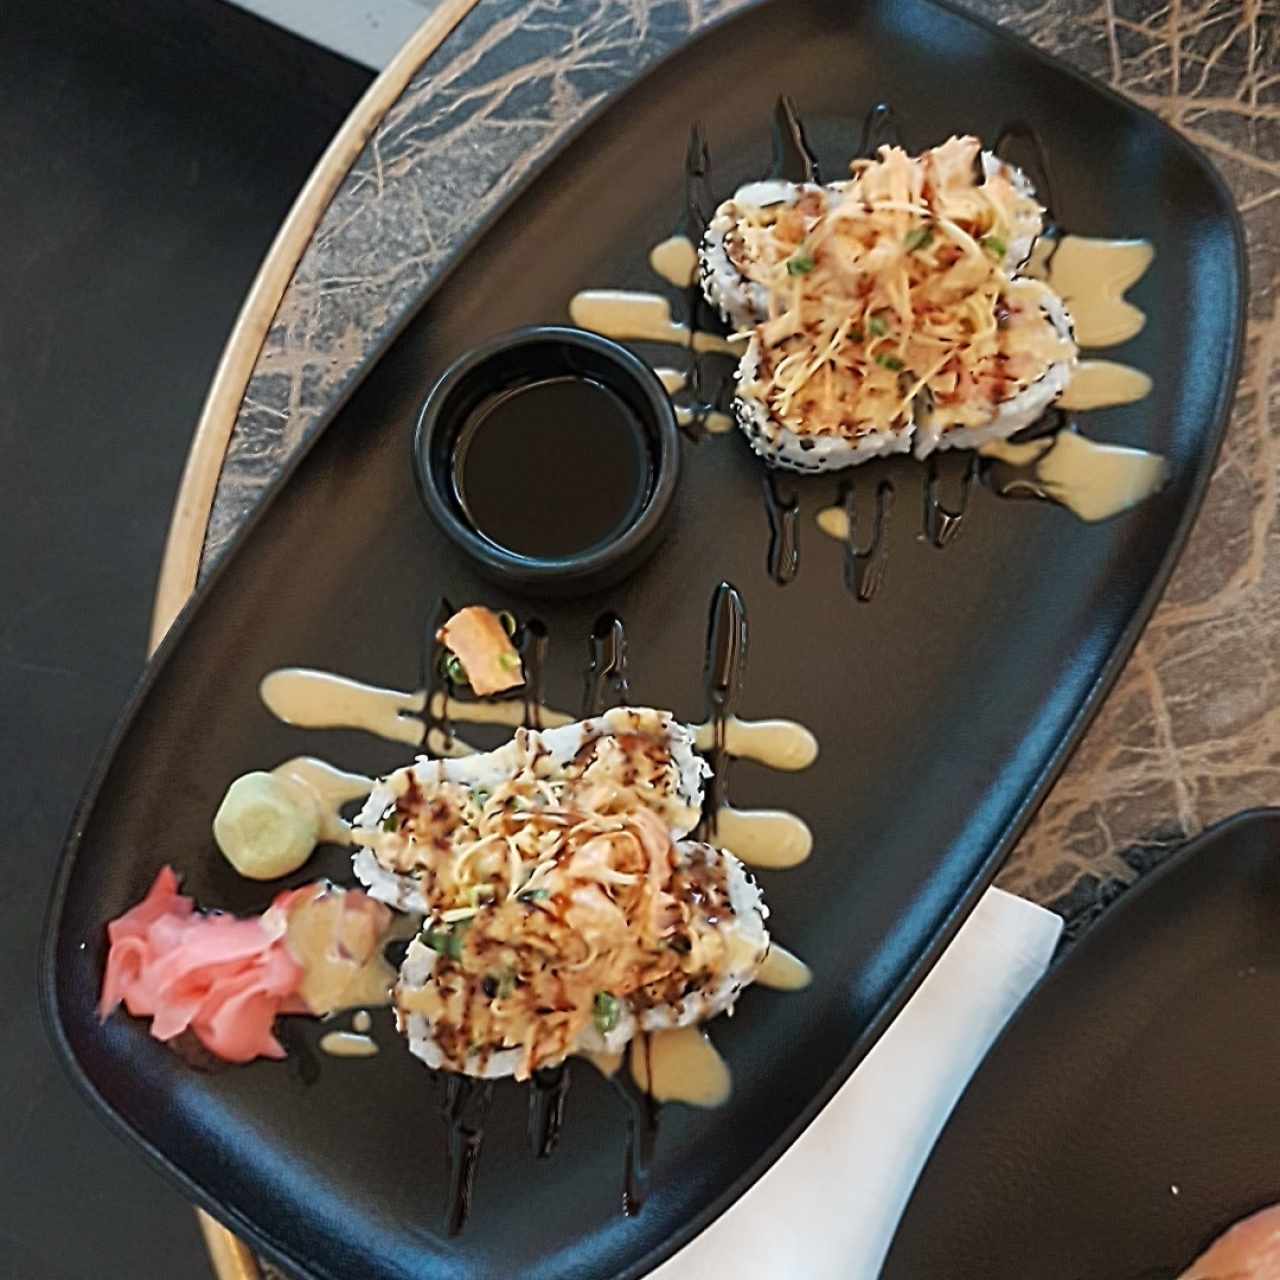 Sushis - Samurai roll